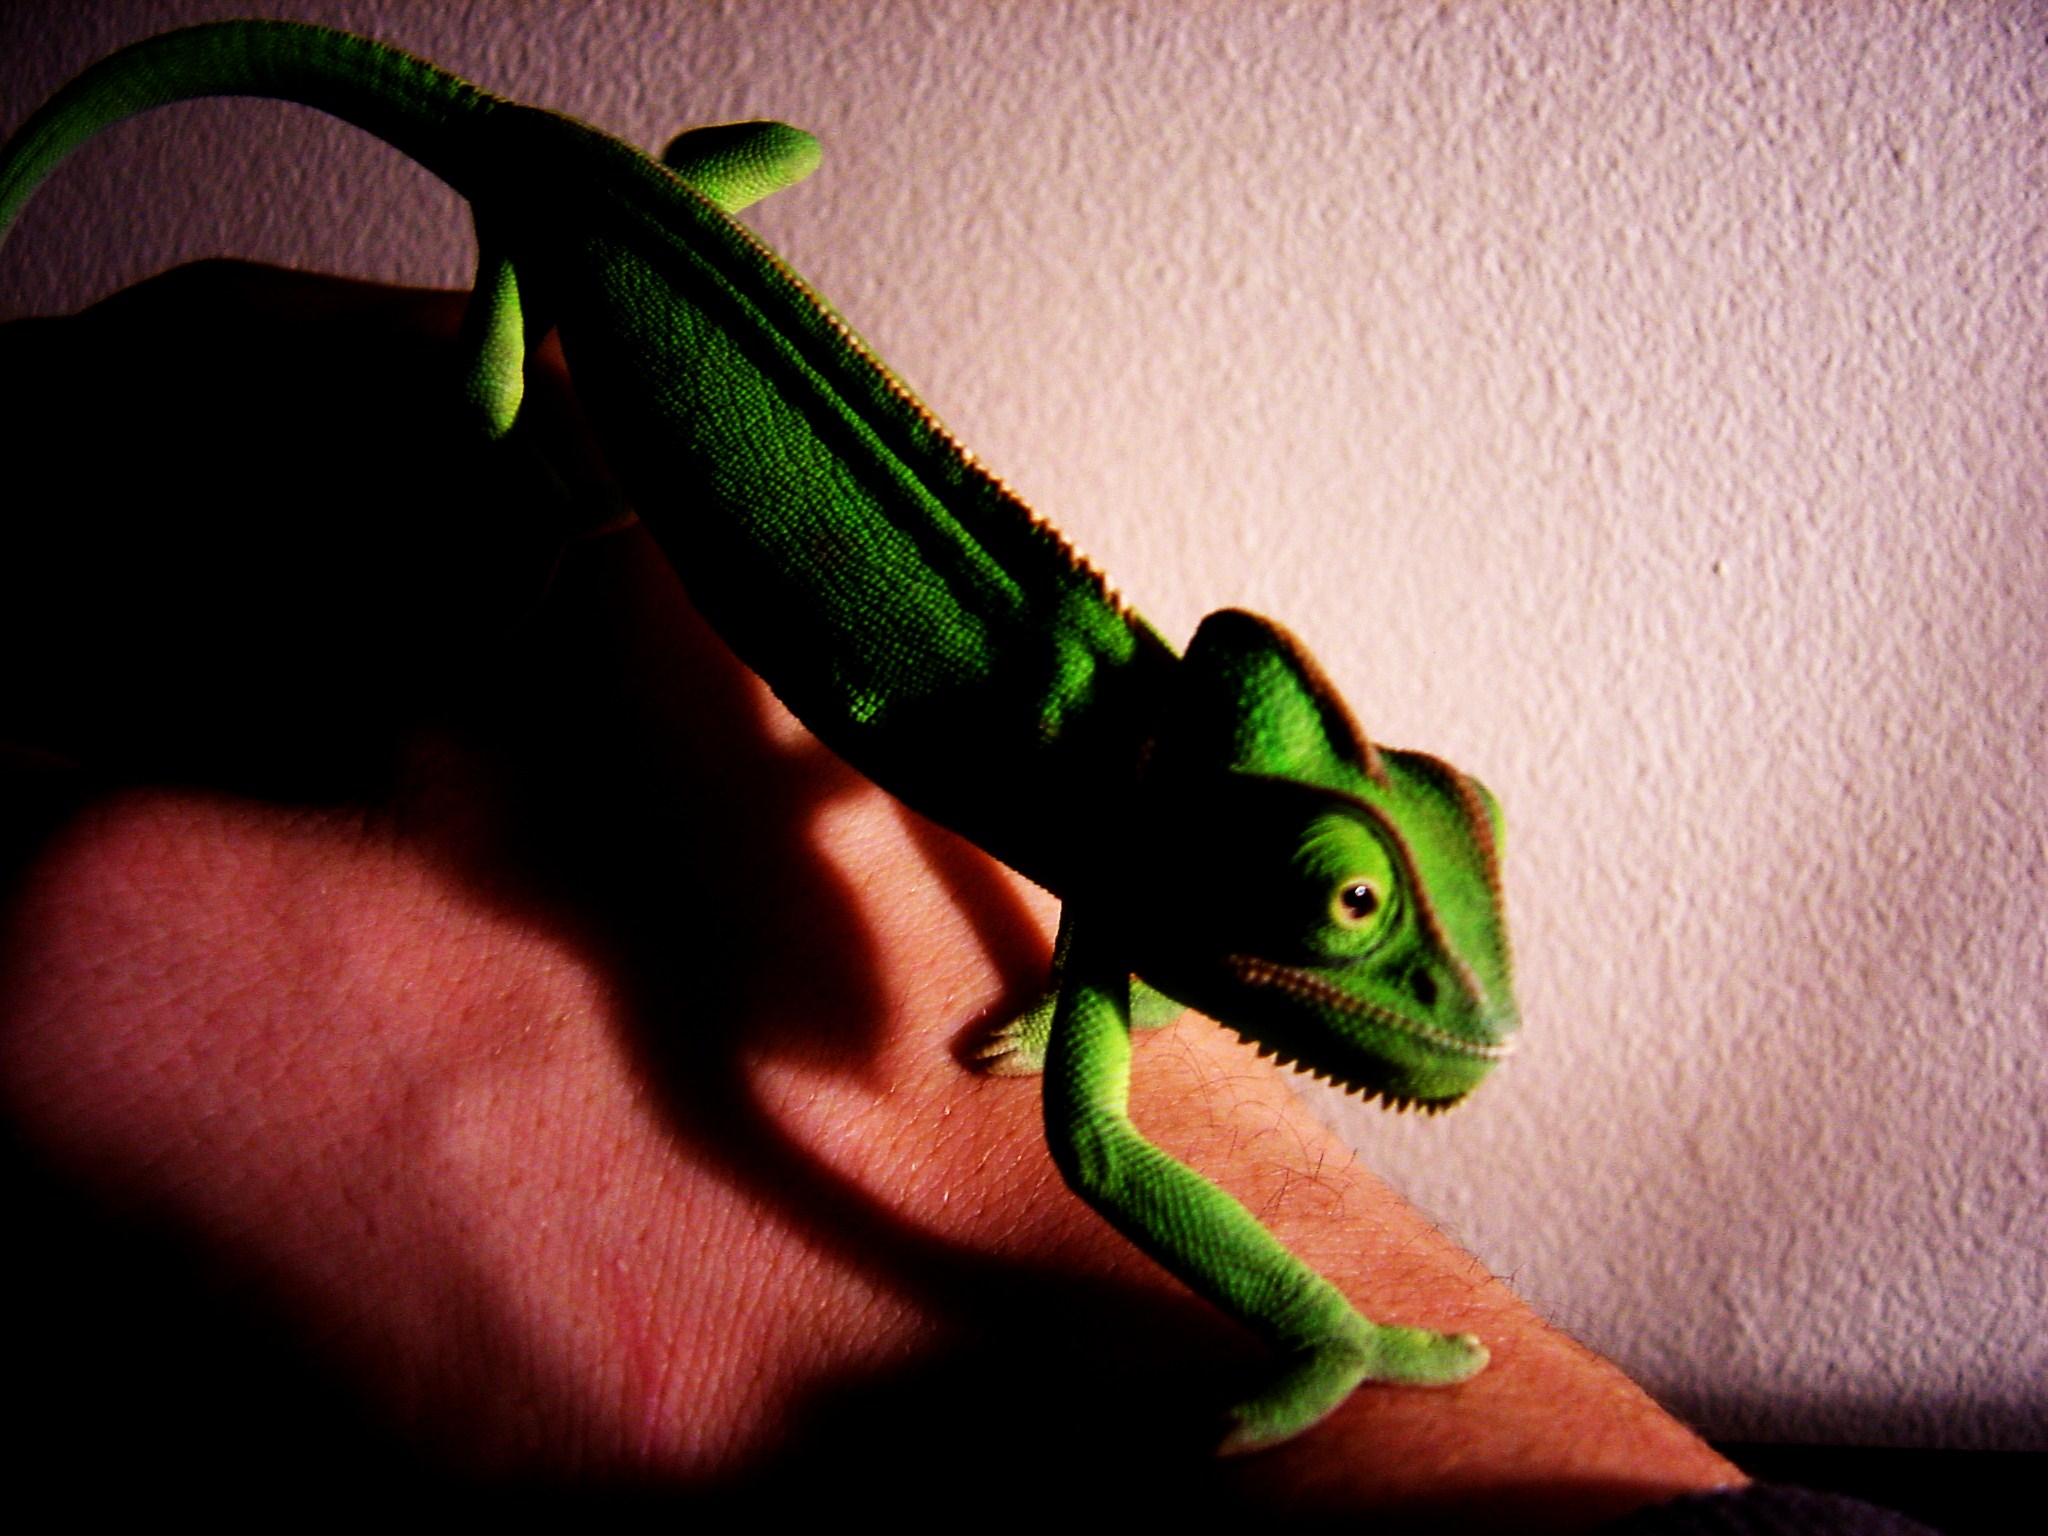 Veiled Chameleon Image 1